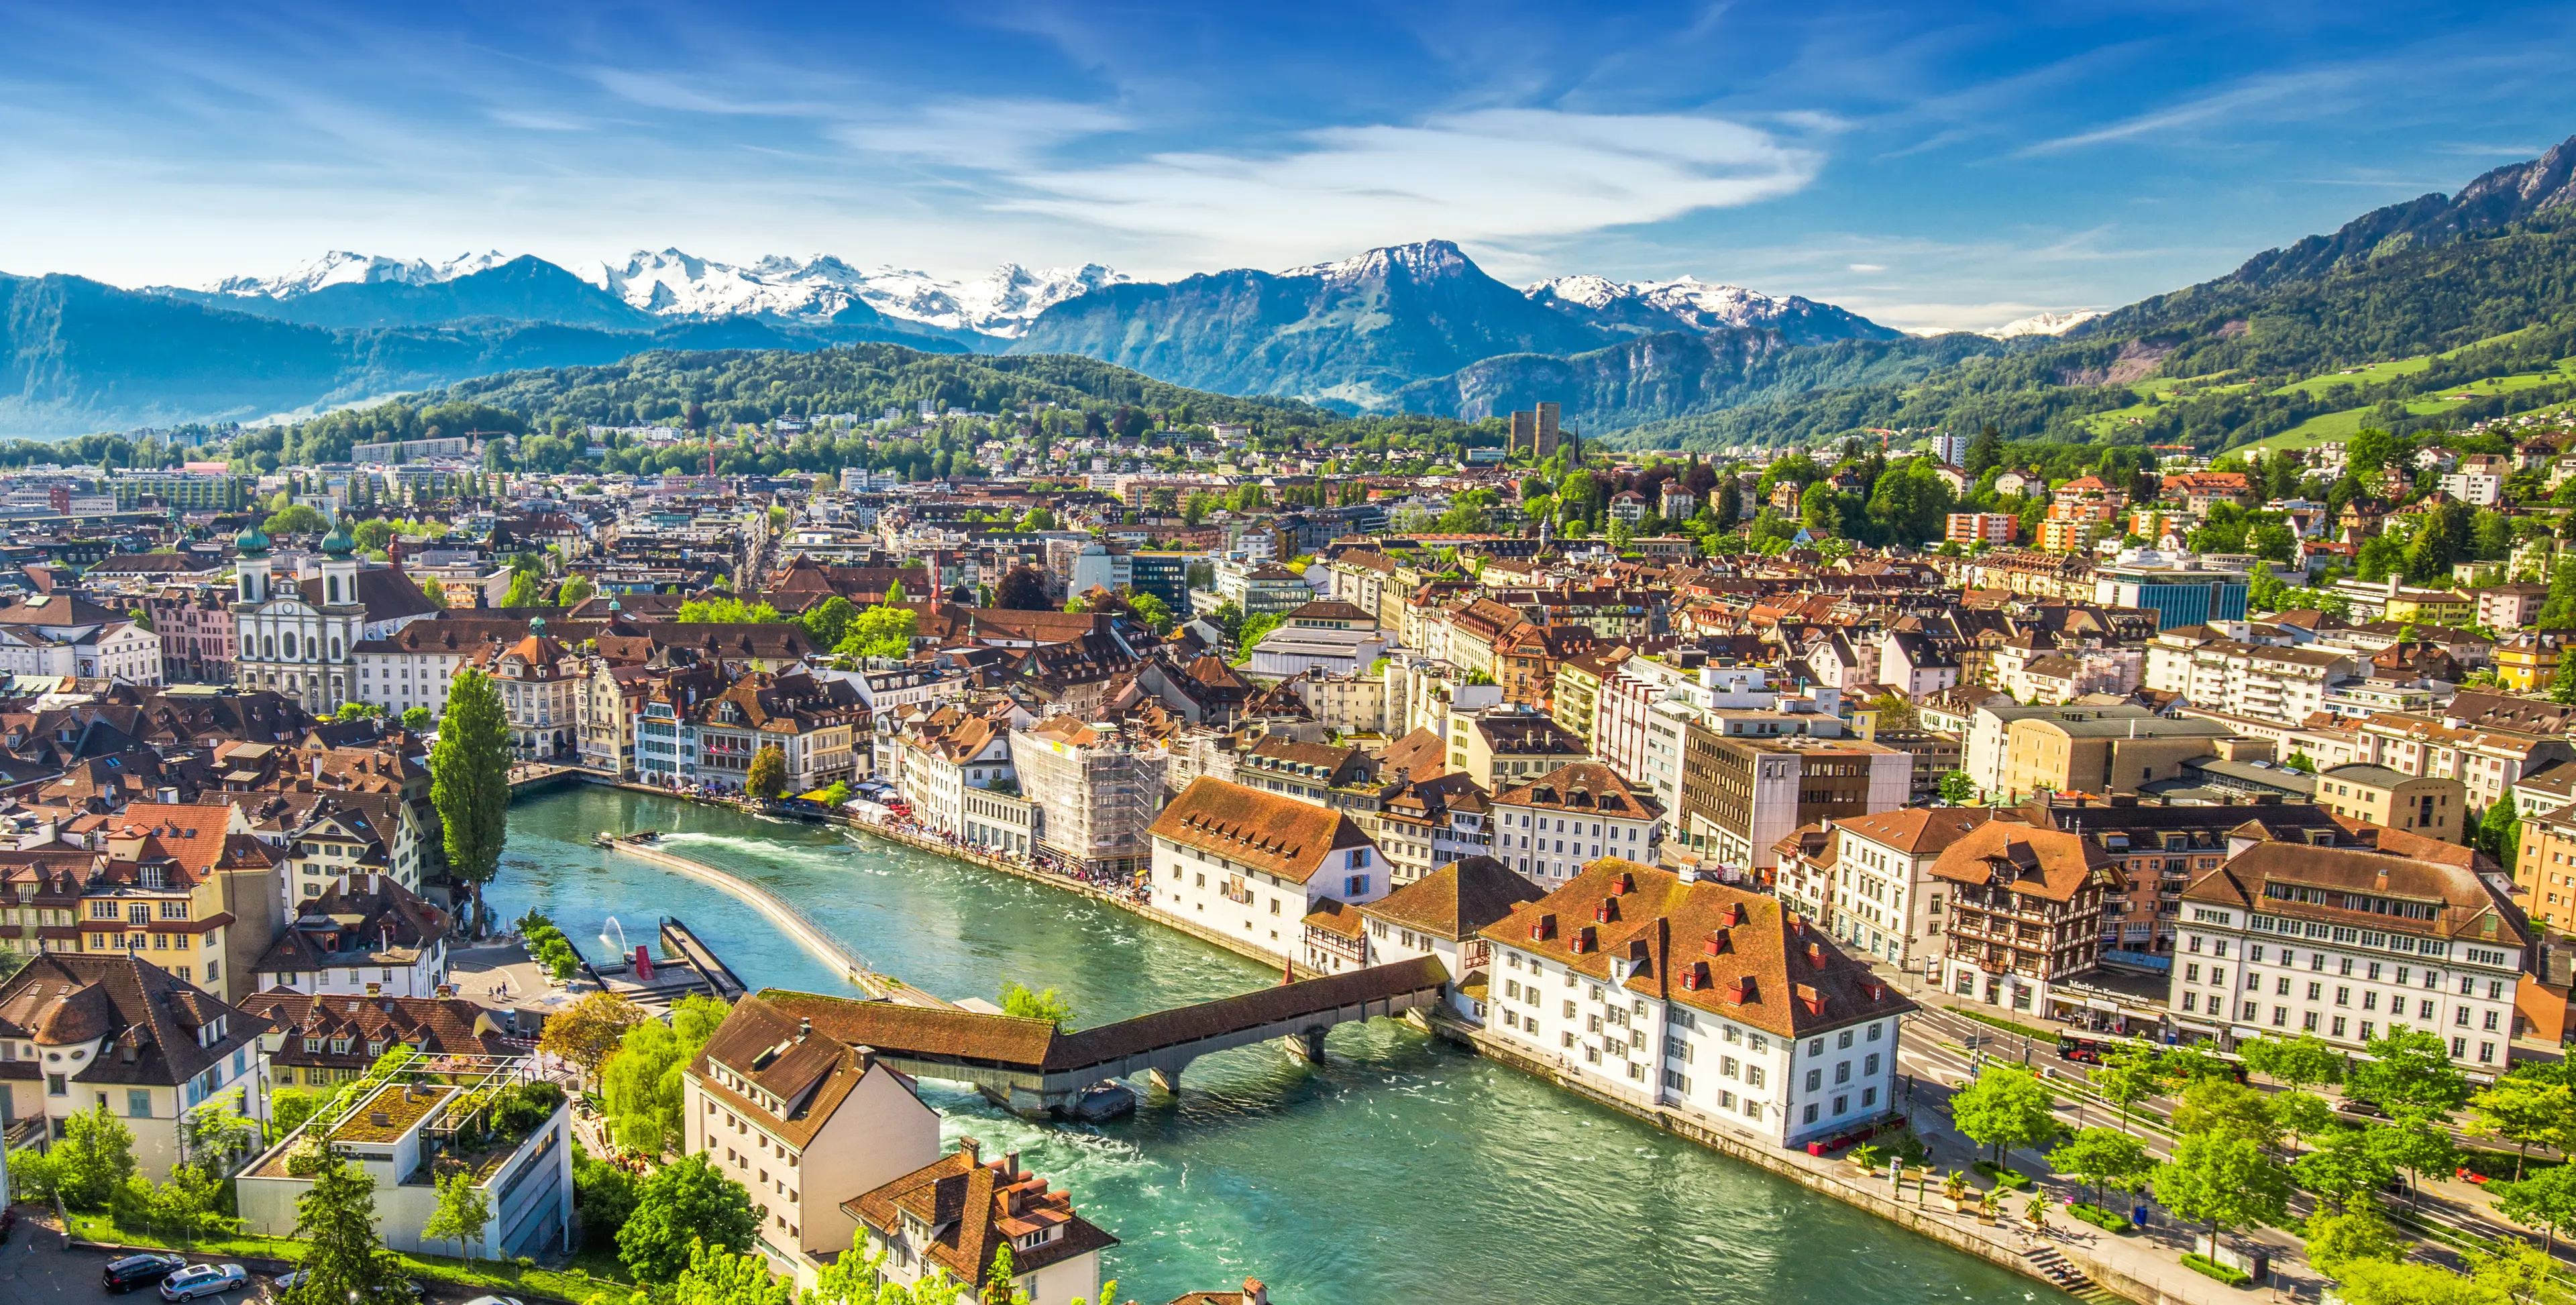 3-Day Solo Adventure: Food, Wine & Thrill in Lucerne, Switzerland